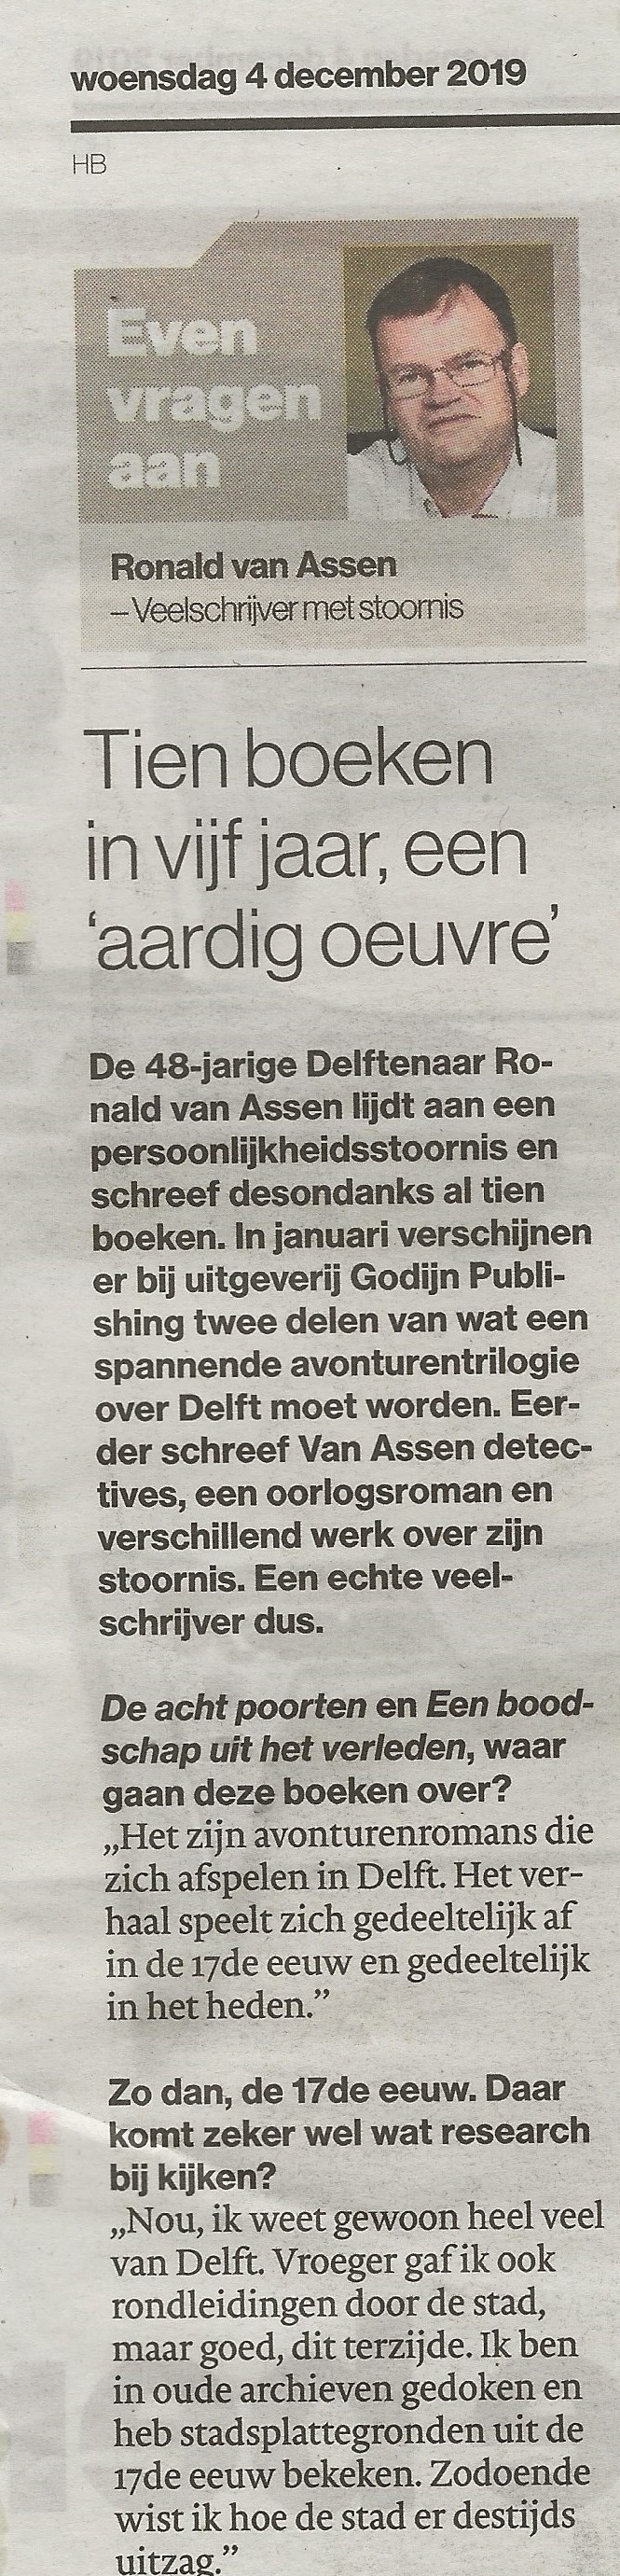 Algemeen Dagblad Delft 06-12-2019 deel1